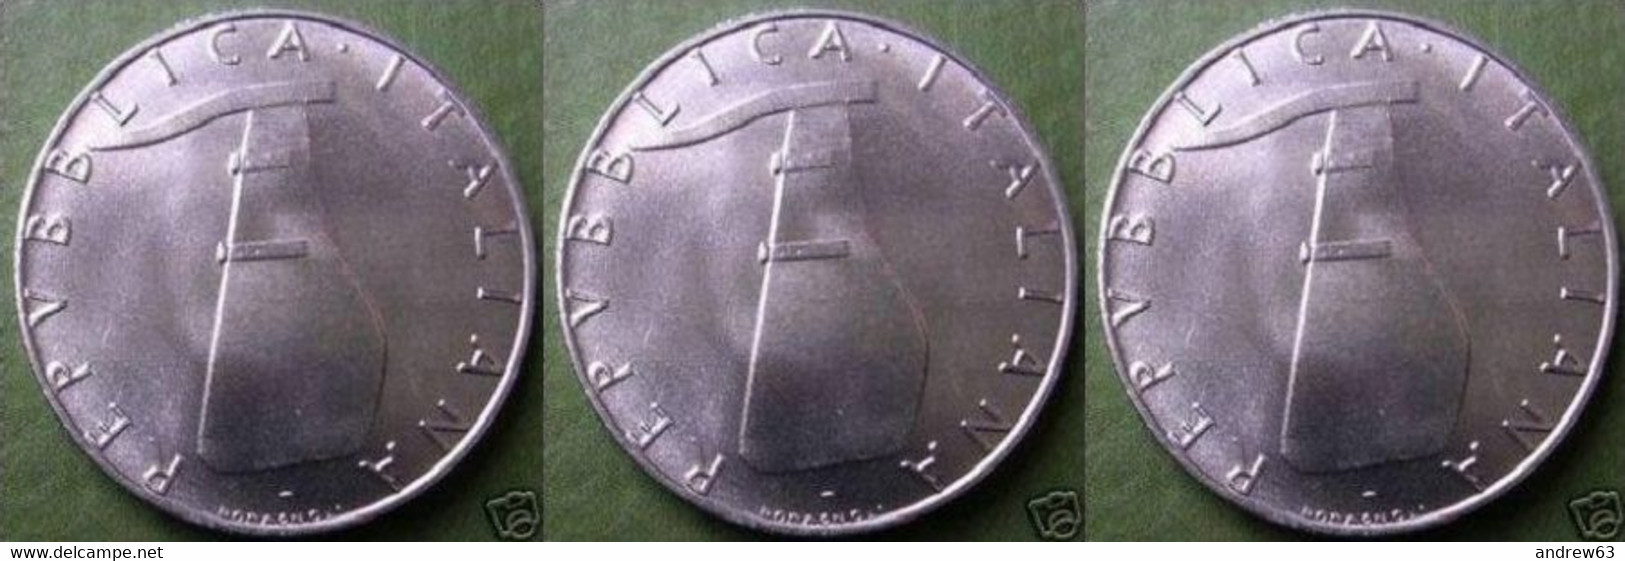 ITALIA - Lire 5 1993 - FDC/Unc Da Rotolino/from Roll 3 Monete/3 Coins - 5 Lire